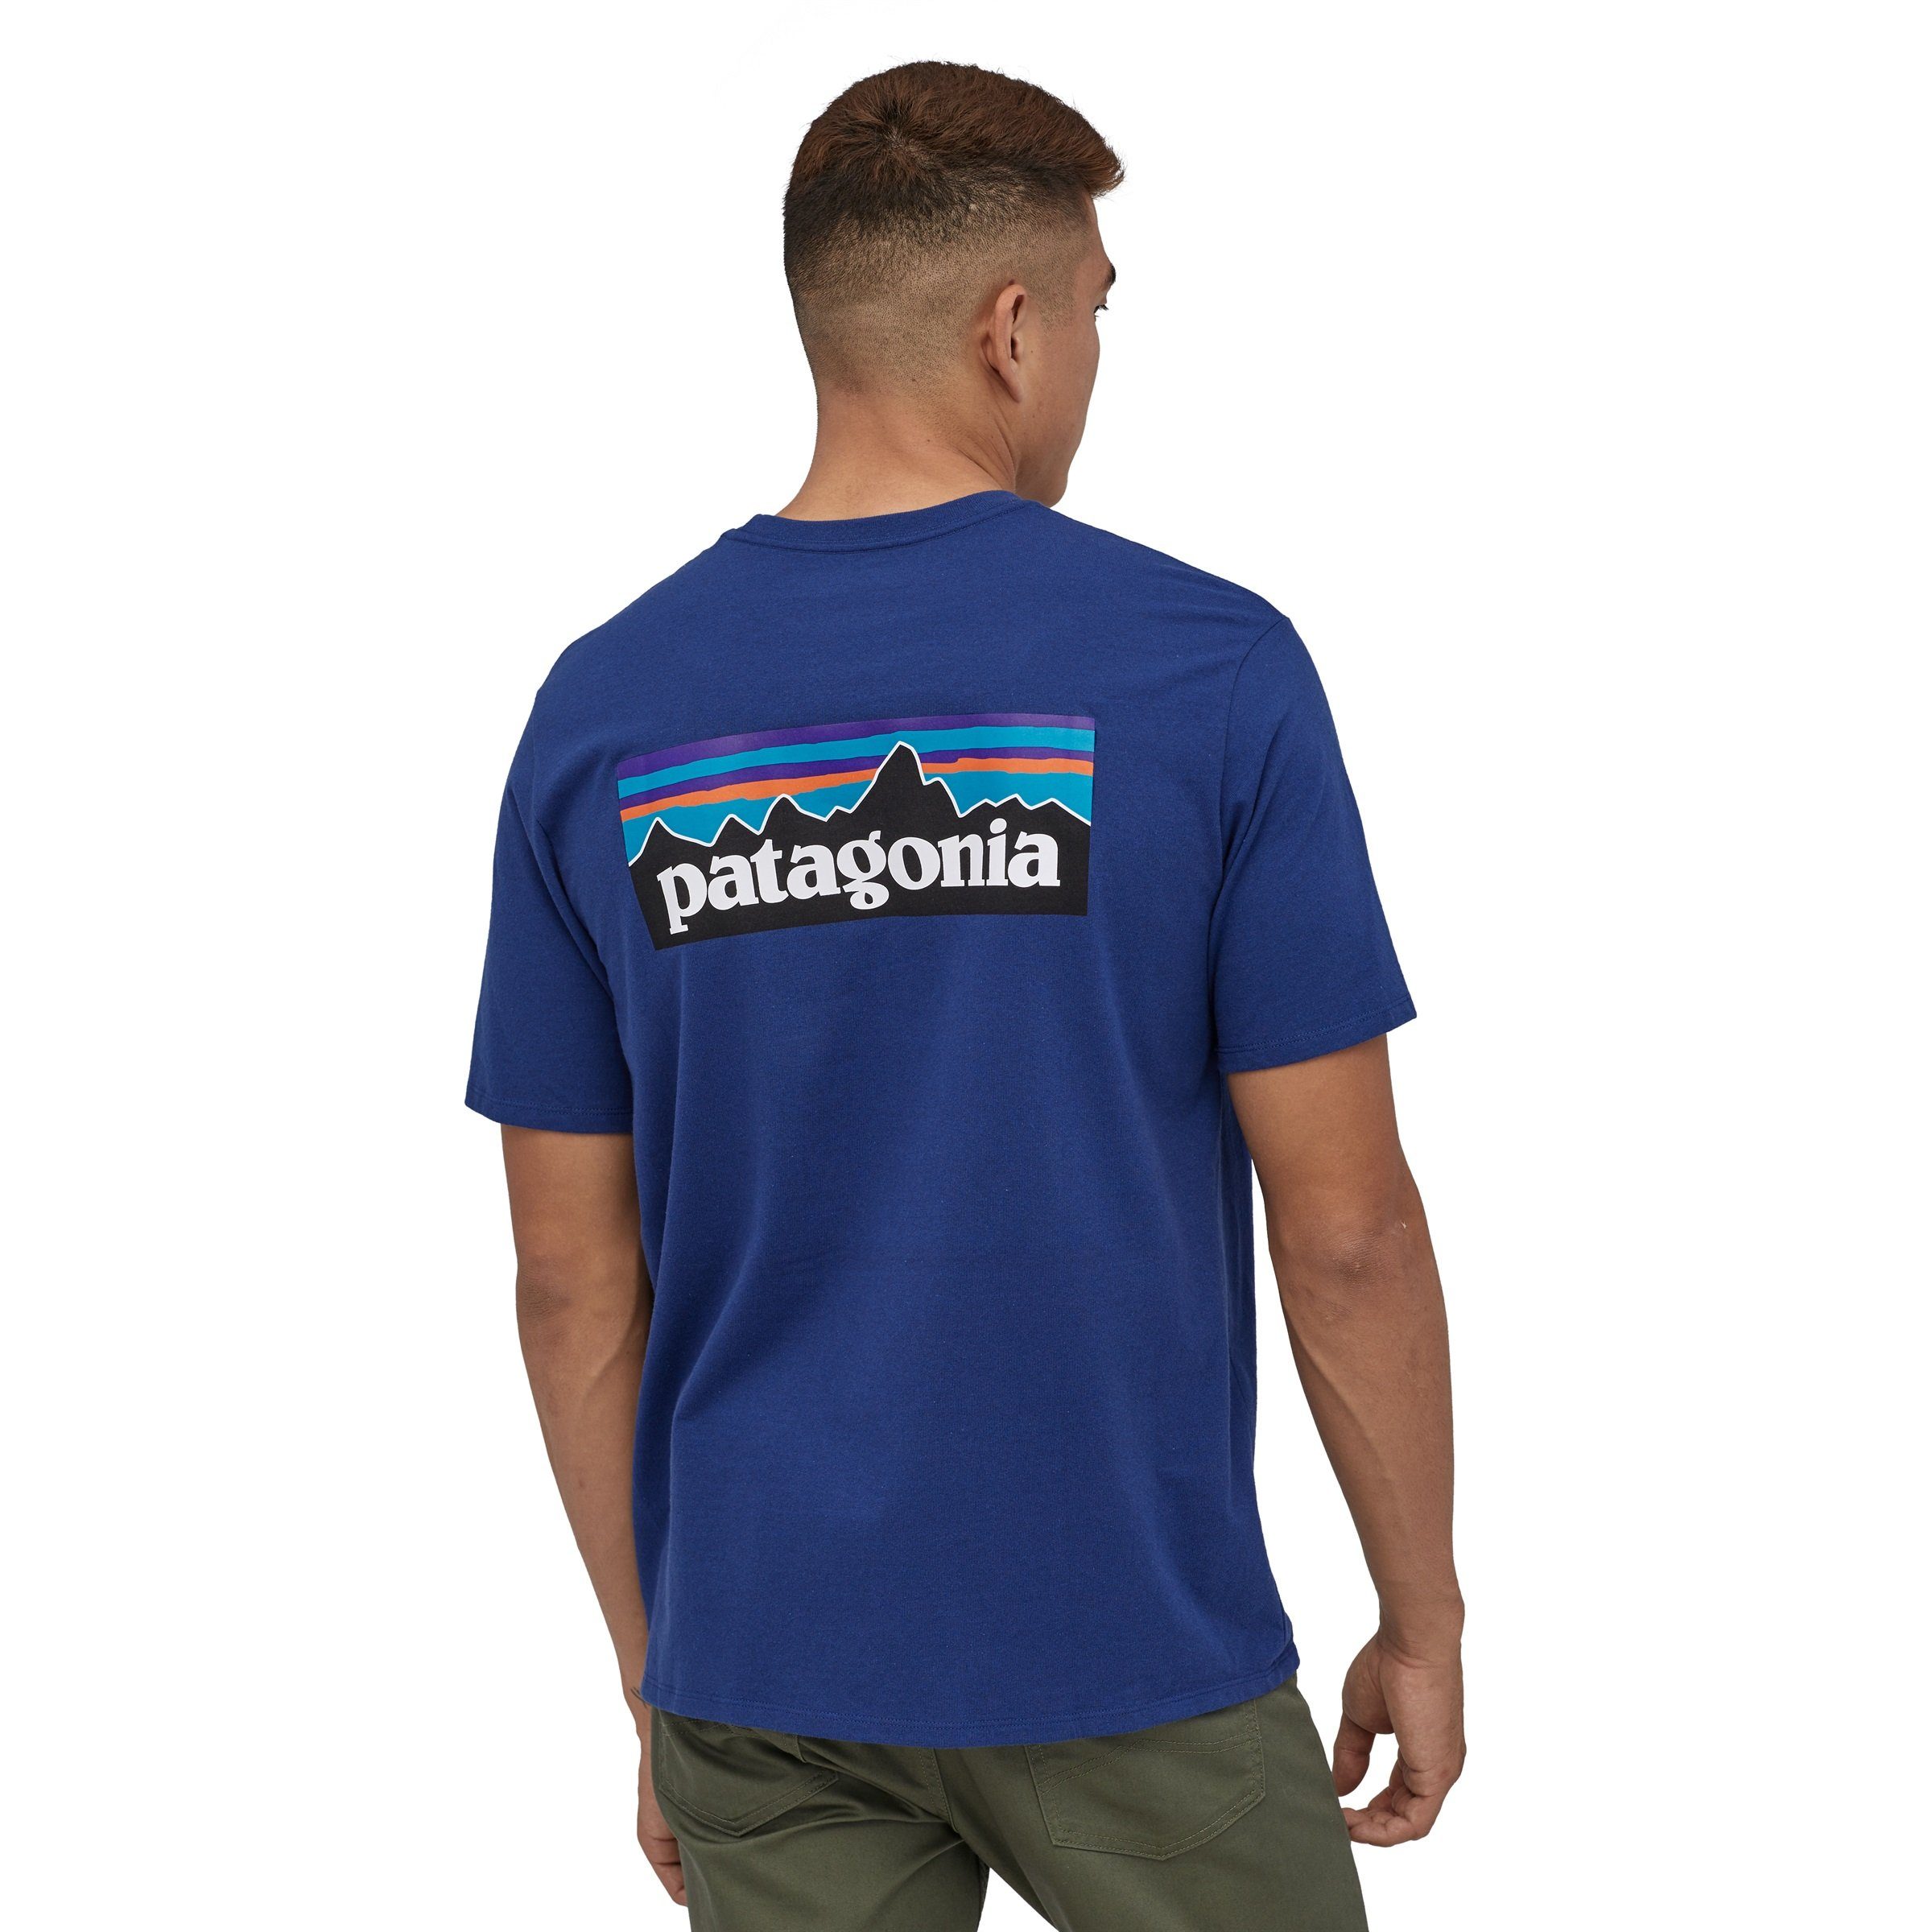 Patagonia Patagonia white Adult Herren Responsibili-Tee T-Shirt T-Shirt P-6 Logo